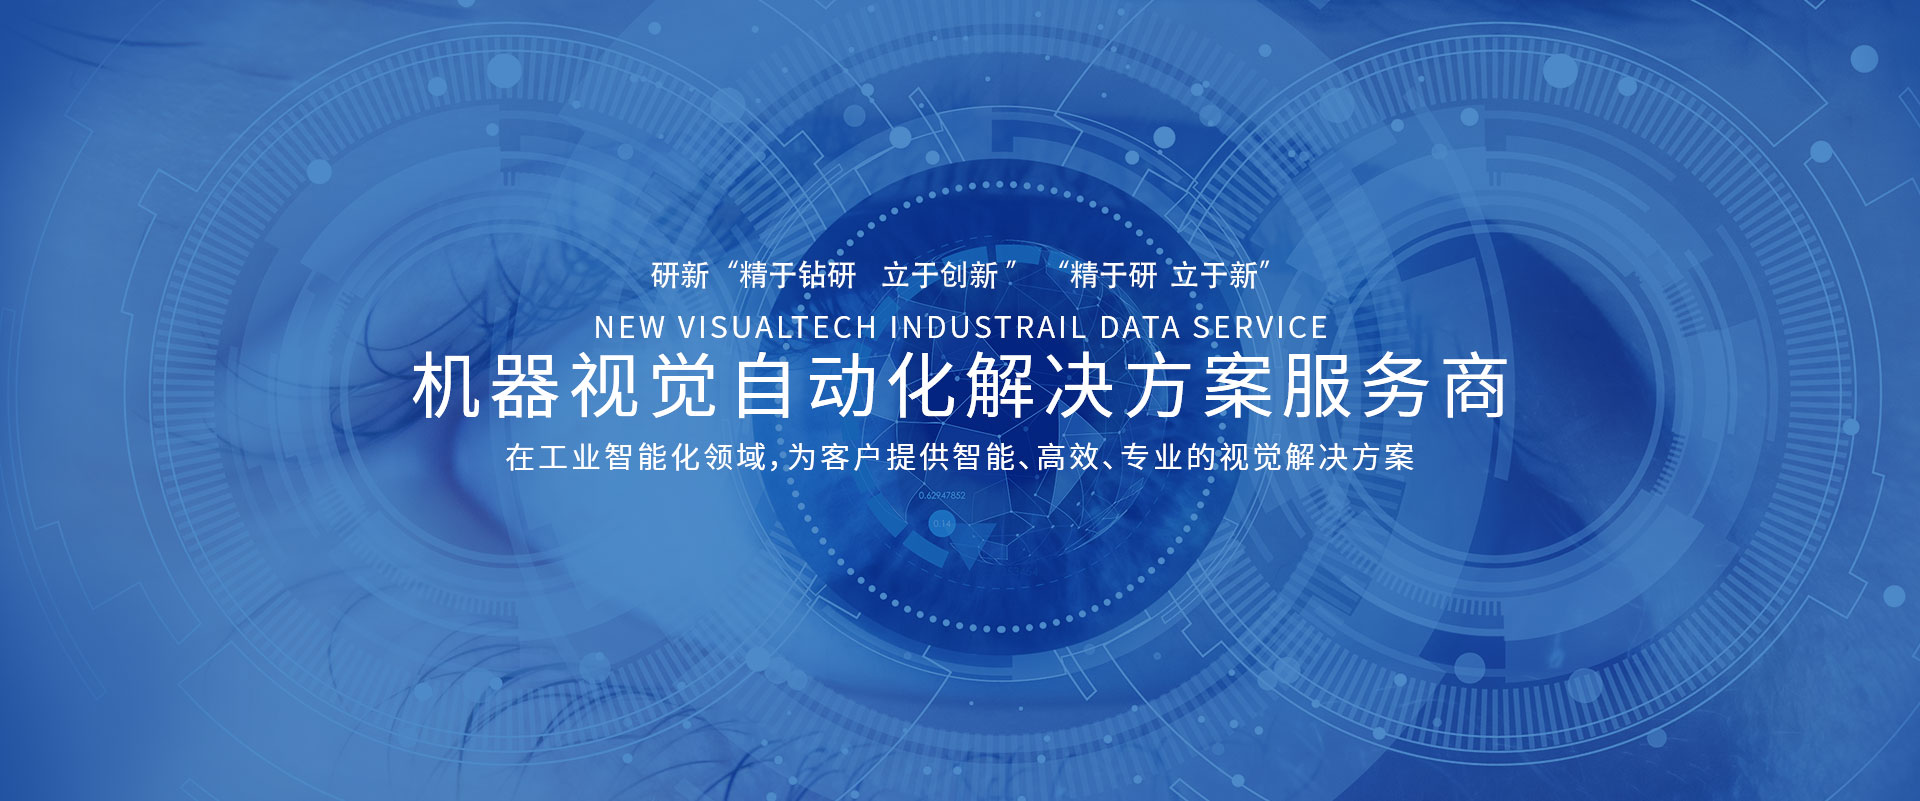 宁波自动批量二维码扫描公司